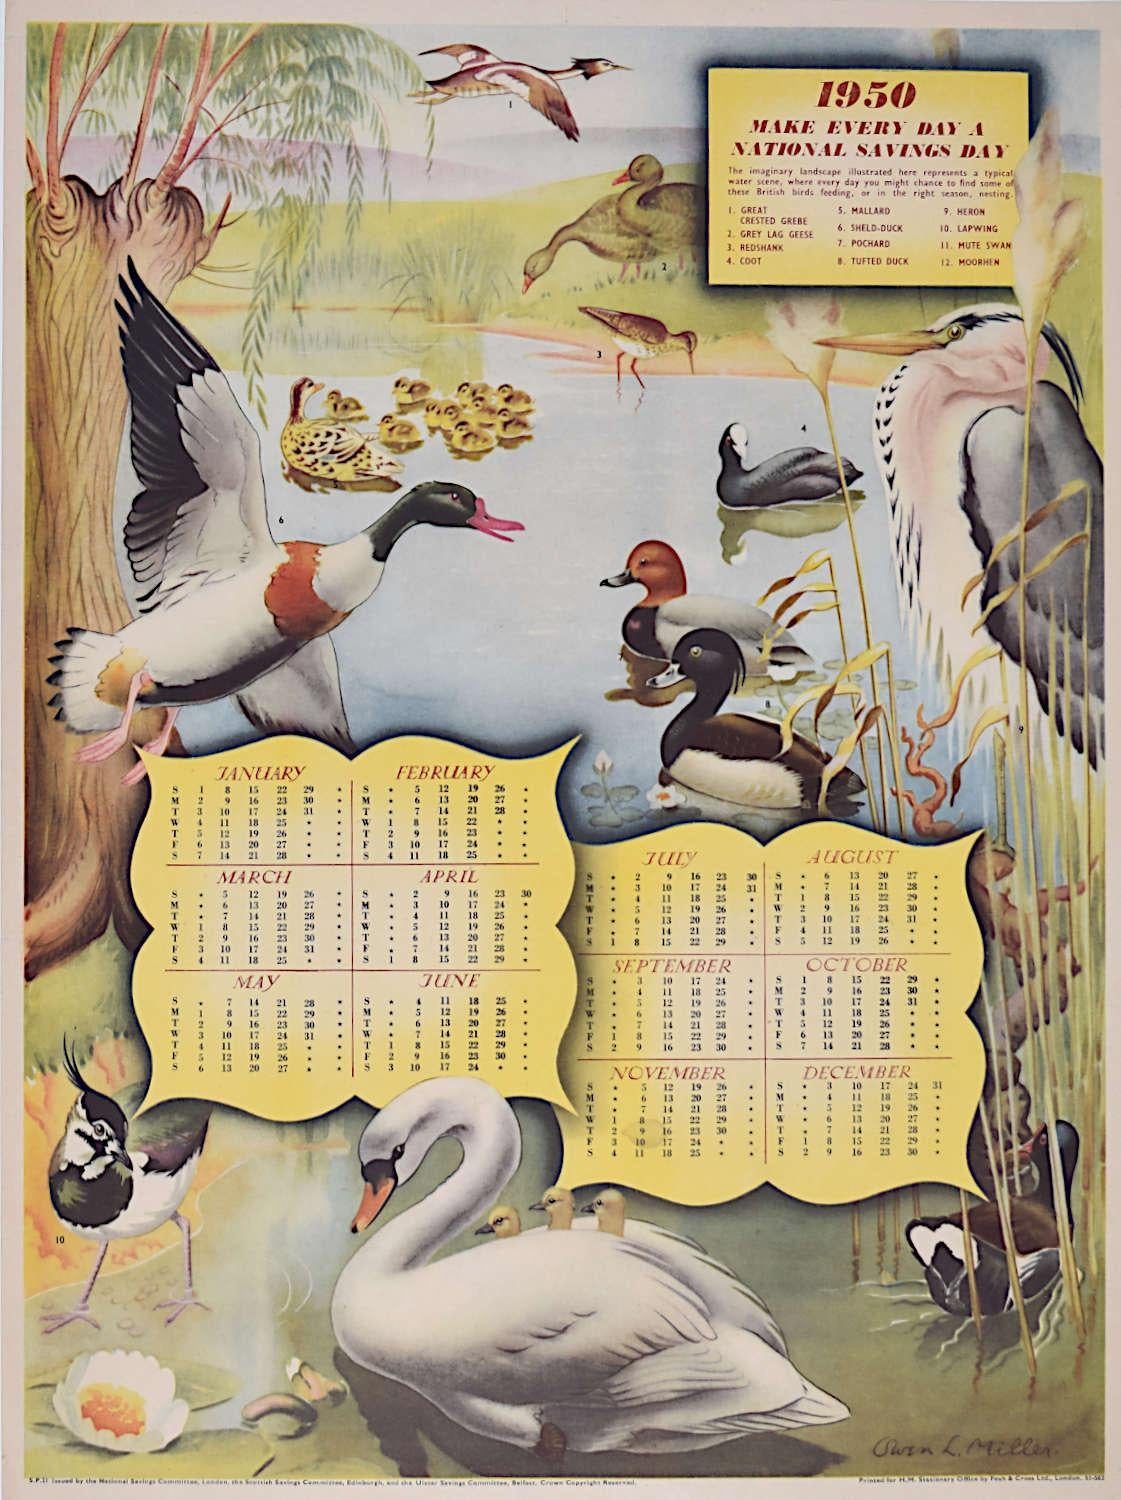 Owen Miller (1907-1960)
Affiche du calendrier de l'épargne nationale (1950)
Affiche lithographique
50 x 37 cm

Imprimé pour HMSO par Fosh & Cross.

Une superbe affiche lithographique originale faisant la publicité du National Savings scheme et